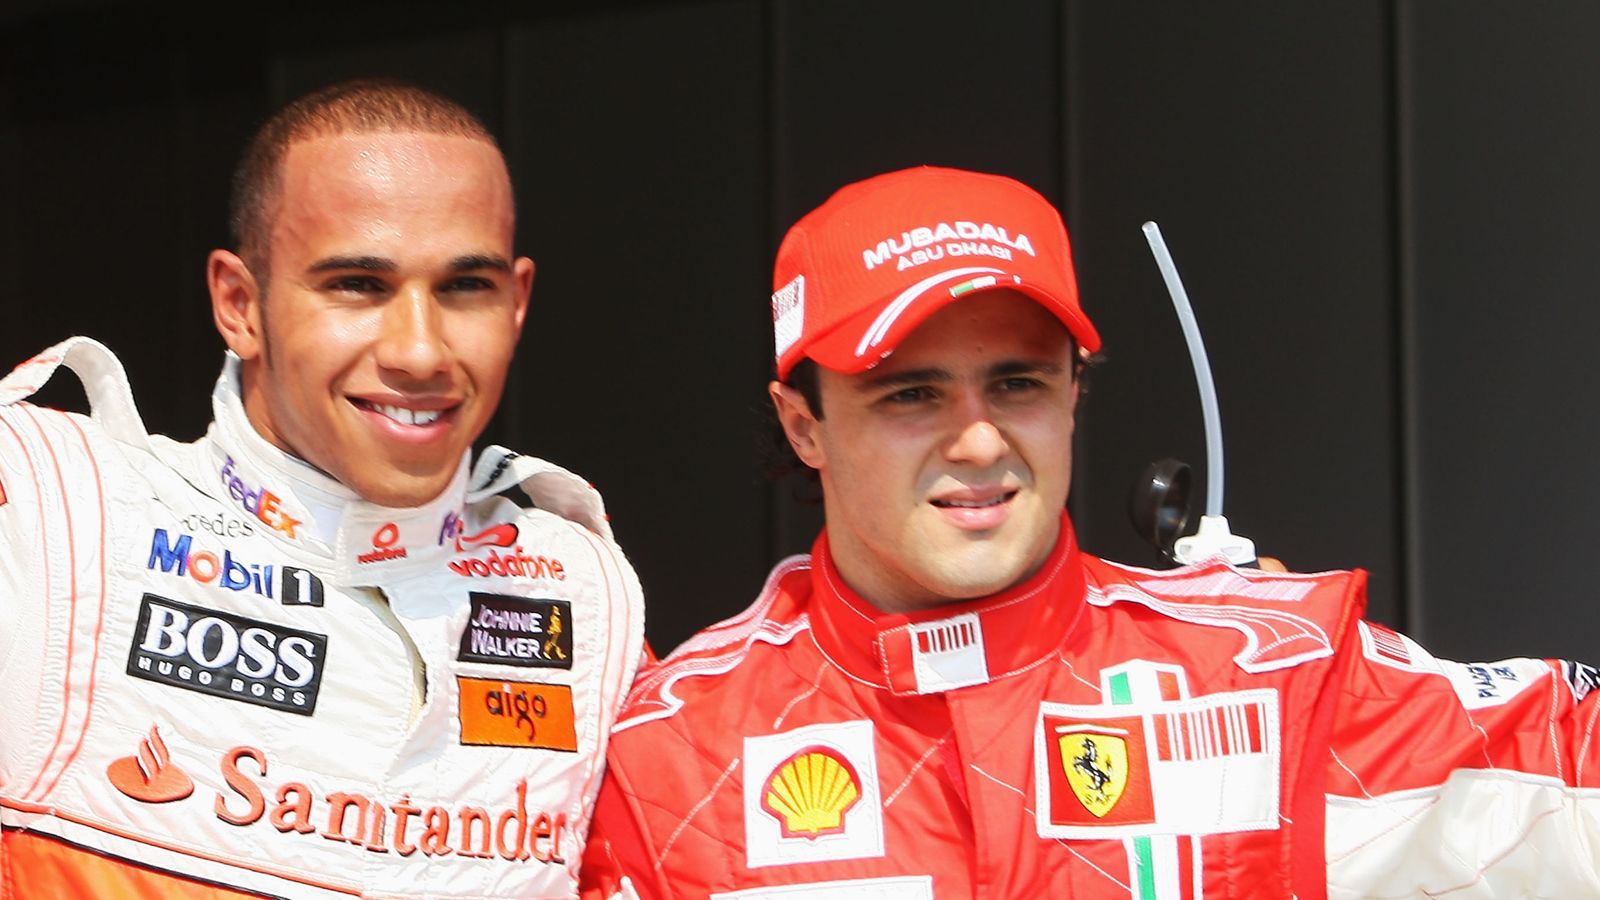 <strong>2008 - Ein Punkt Unterschied - Lewis Hamilton 98, Felipe Massa 97</strong><br>Im finalen Rennen von Brasilien gewann Hamilton die Weltmeisterschaft, da er in der letzten Kurve vor Schluss noch Timo Glock überholte. <a href="https://www.ran.de/sports/motorsport/formel1/news/formel1-wm-titel2008-felipe-massa-rechtliche-schritte-lewis-hamilton-ecclestone-316154">Massa plant aktuell rechtlich dagegen vorzugehen, aufgrund der "Crashgate"-Affäre in Singapur, bei der Renault einen Unfall inszenierte</a>.&nbsp;